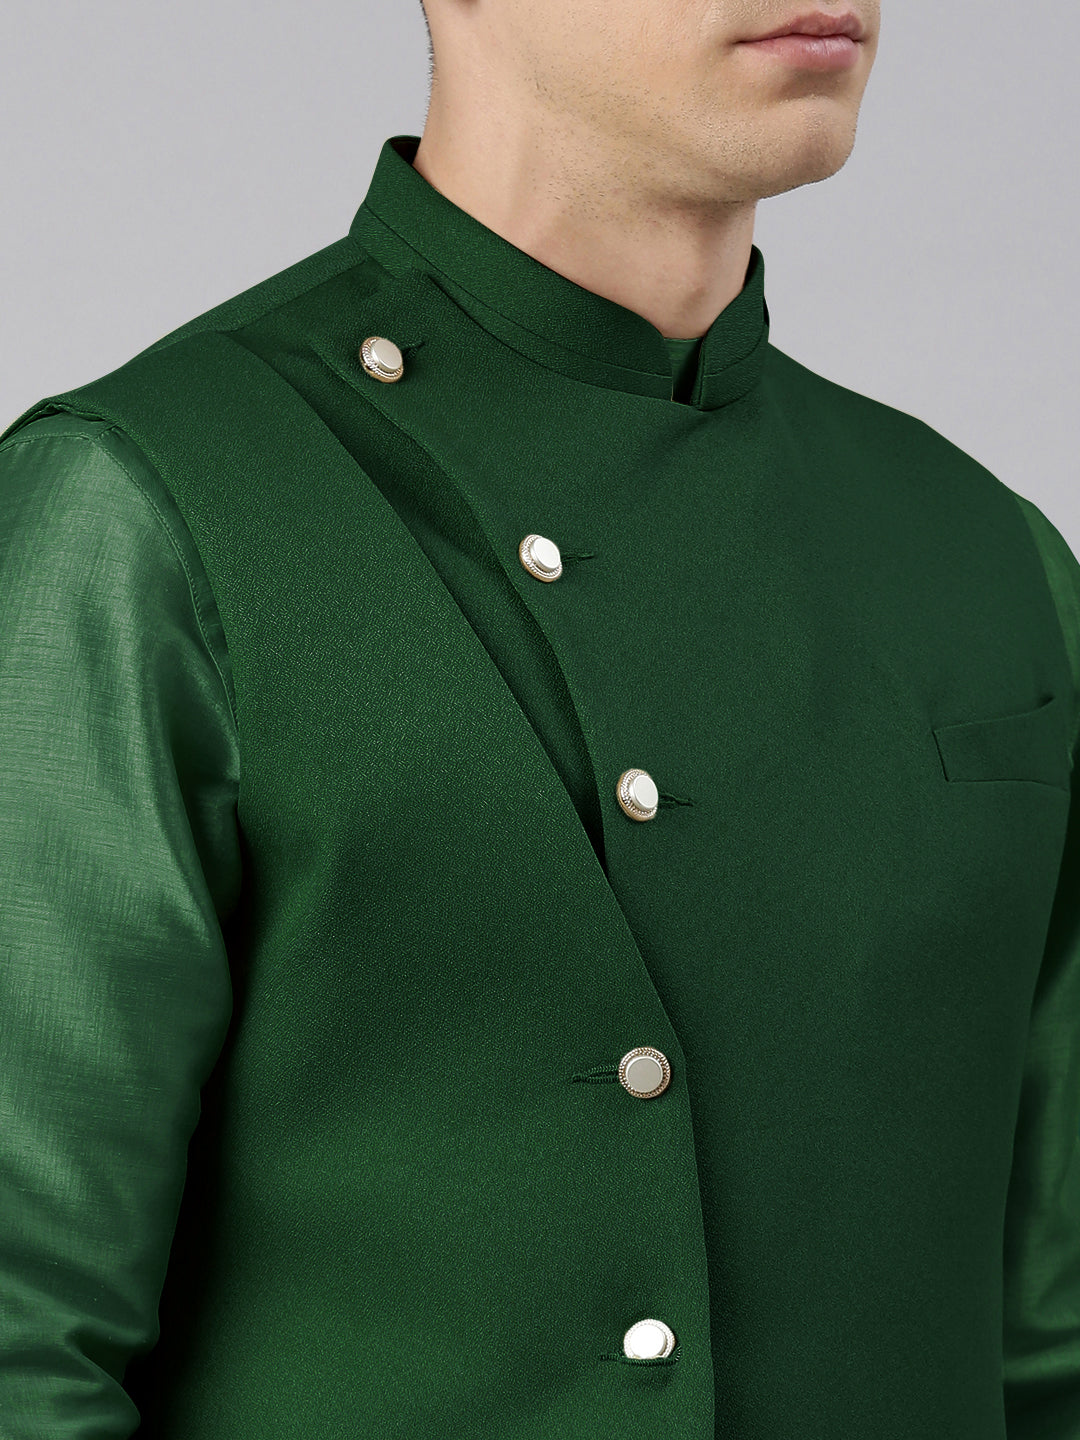 Green Waistcoat Jacket